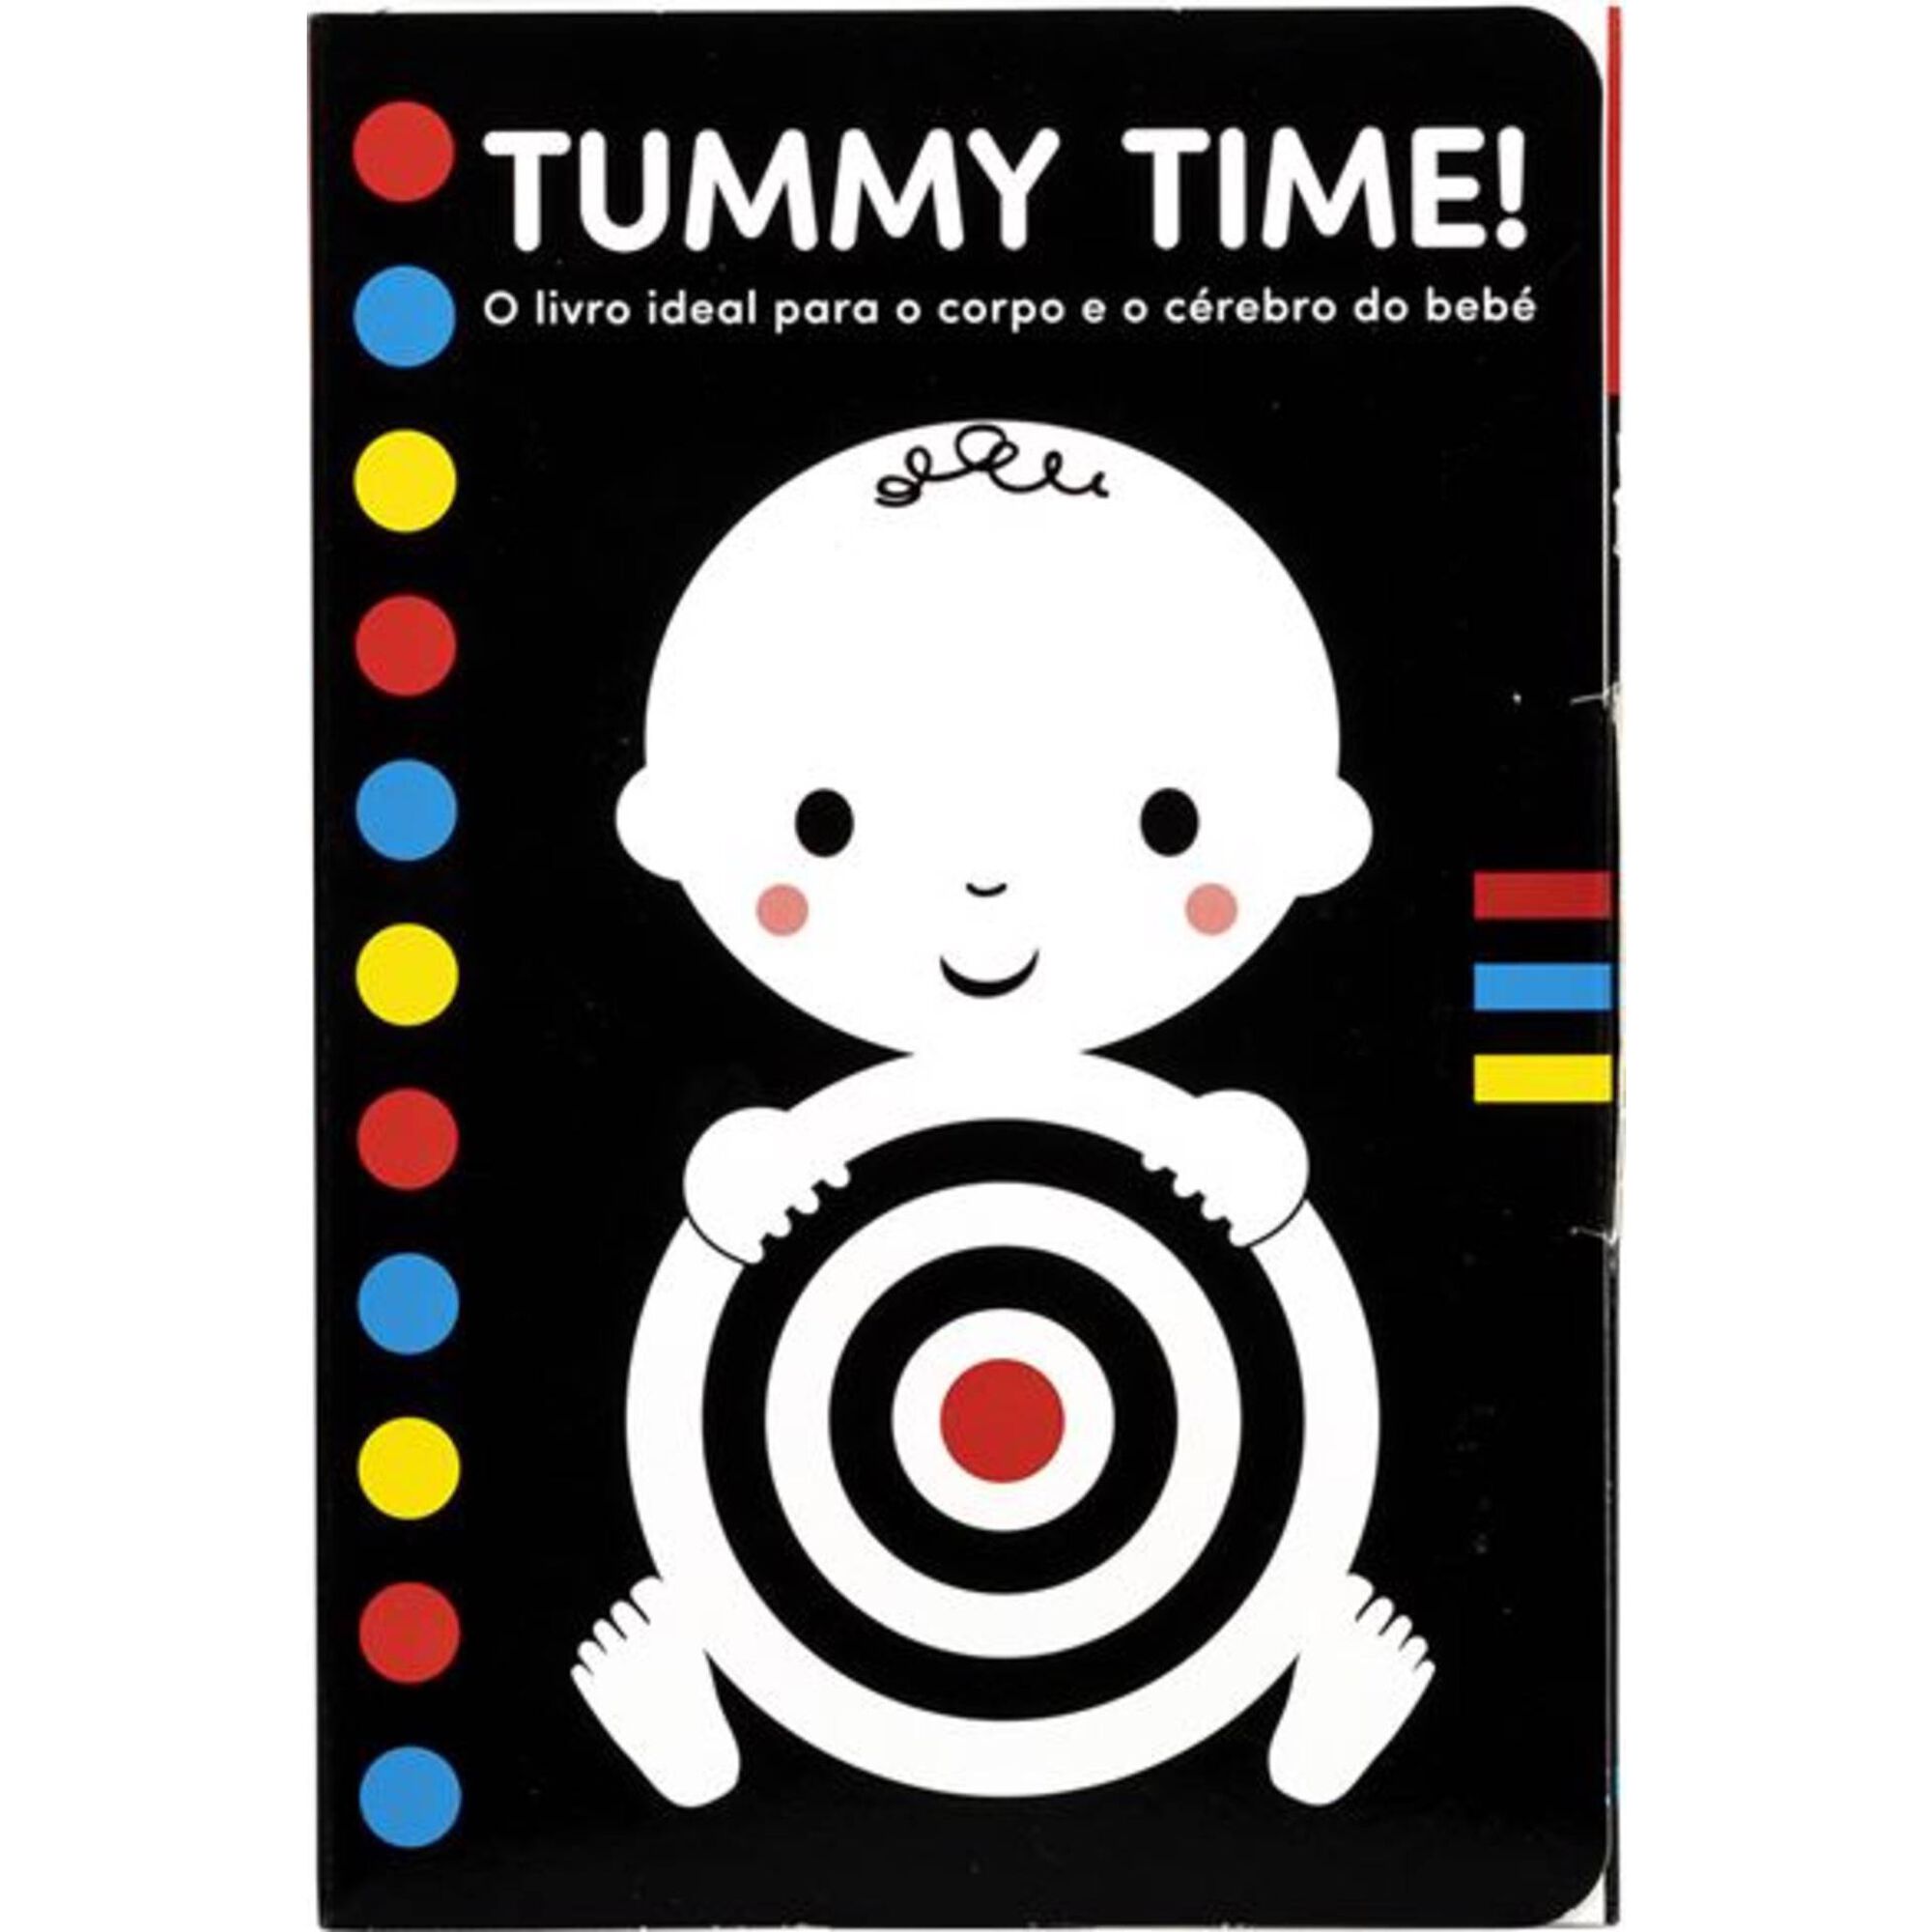 Tummy Time!